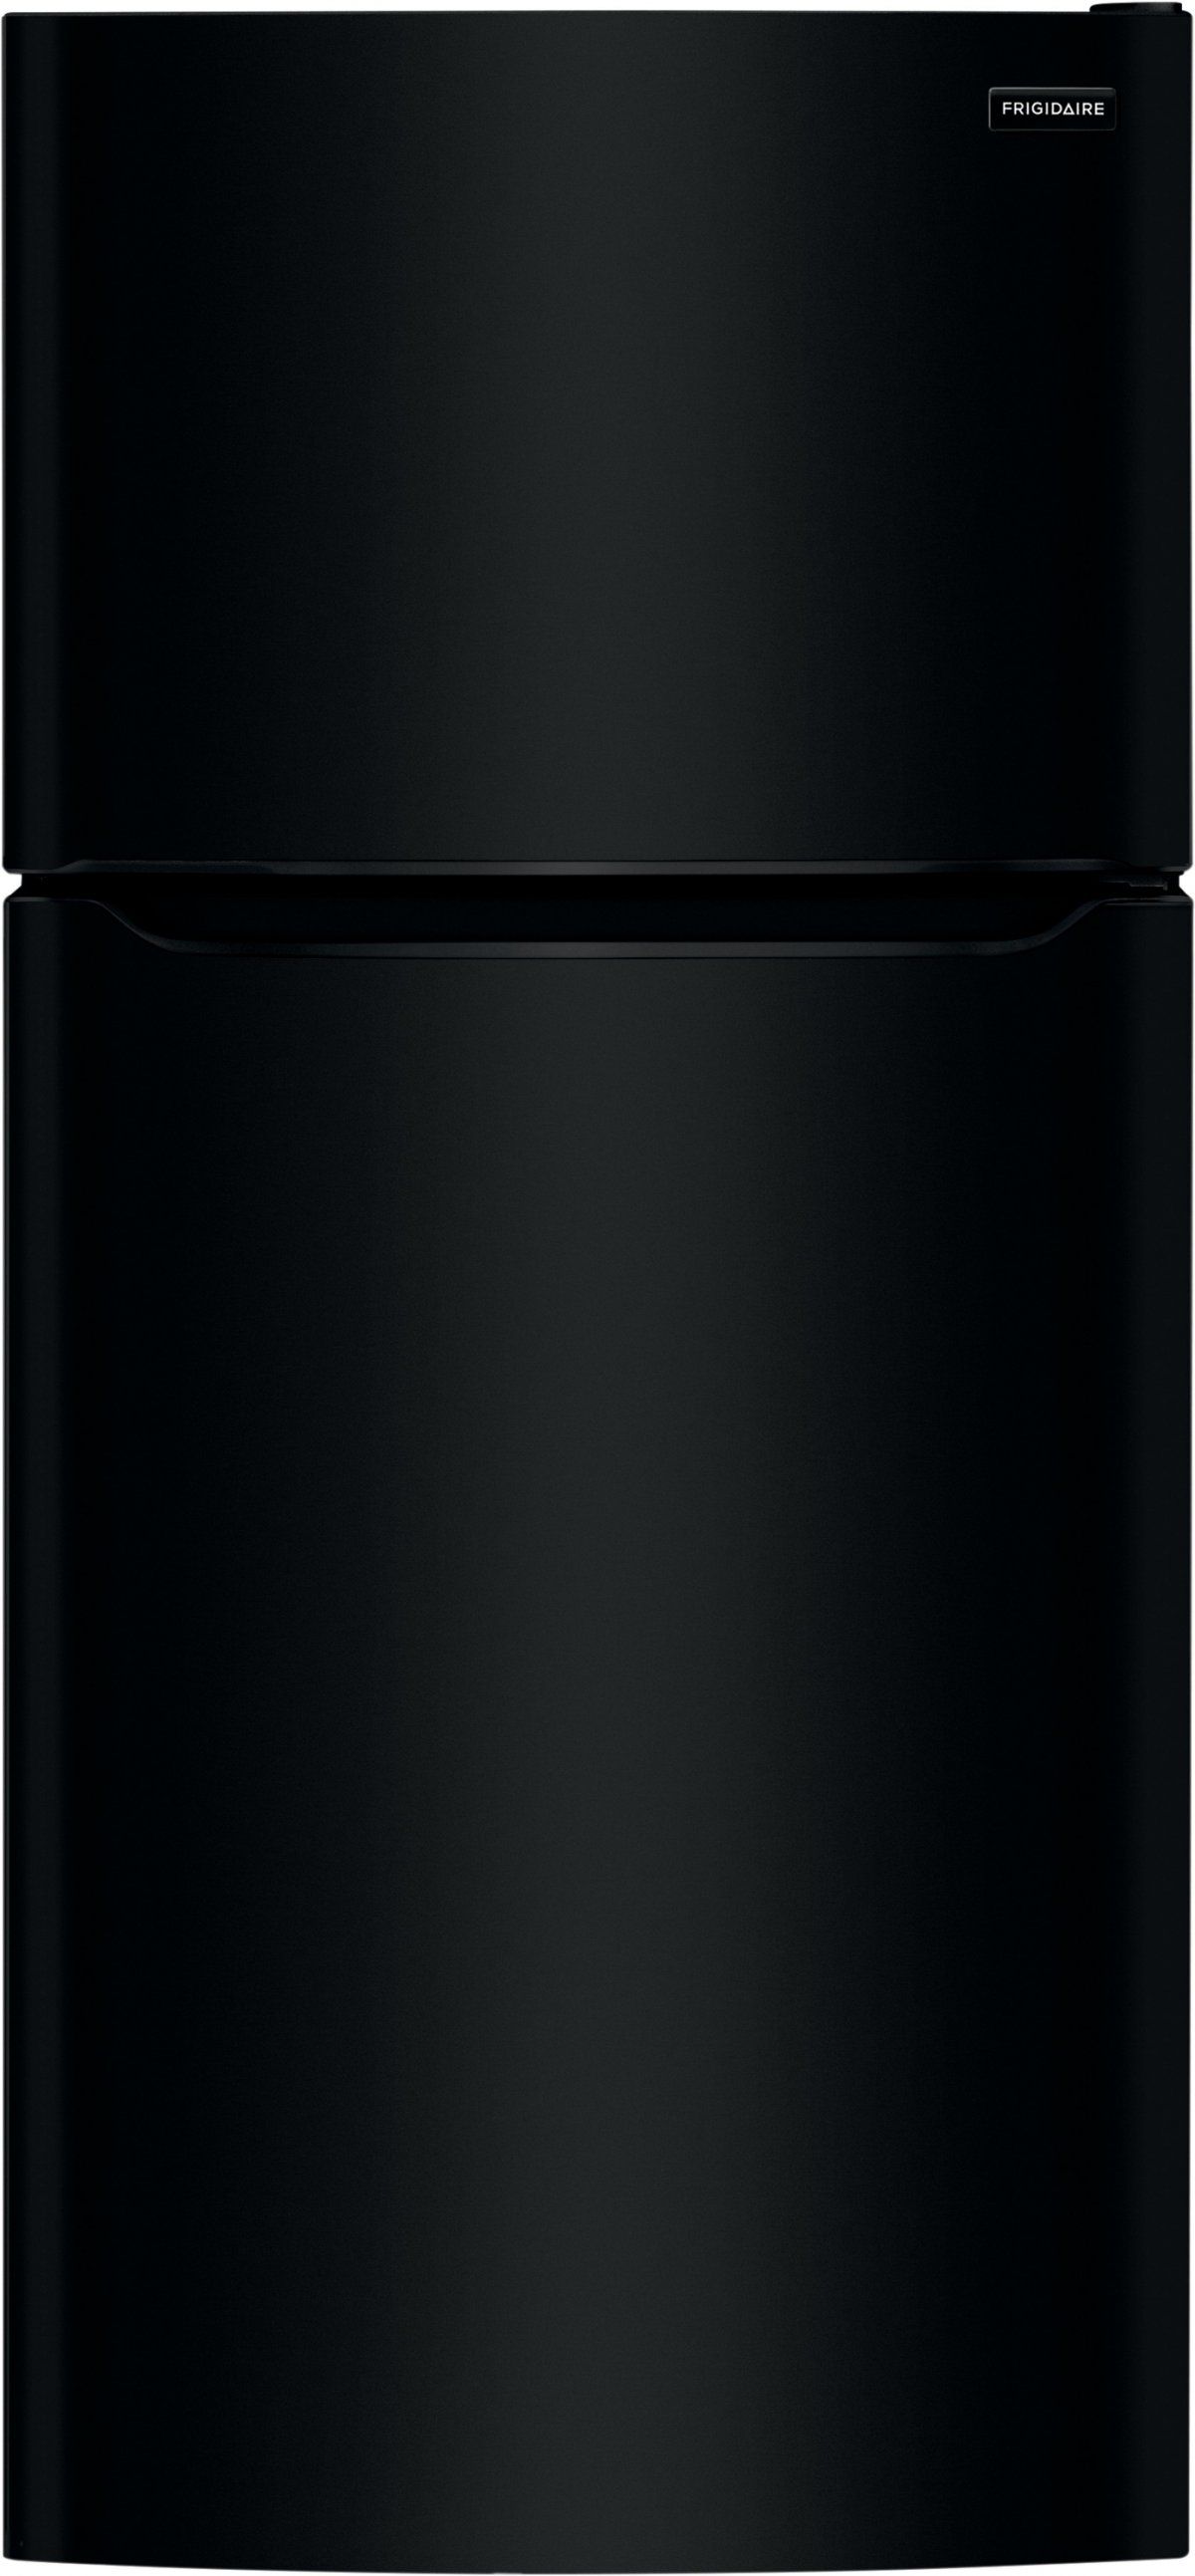 Frigidaire® 20.0 Cu. Ft. Black Top Freezer Refrigerator-FFTR2045VB